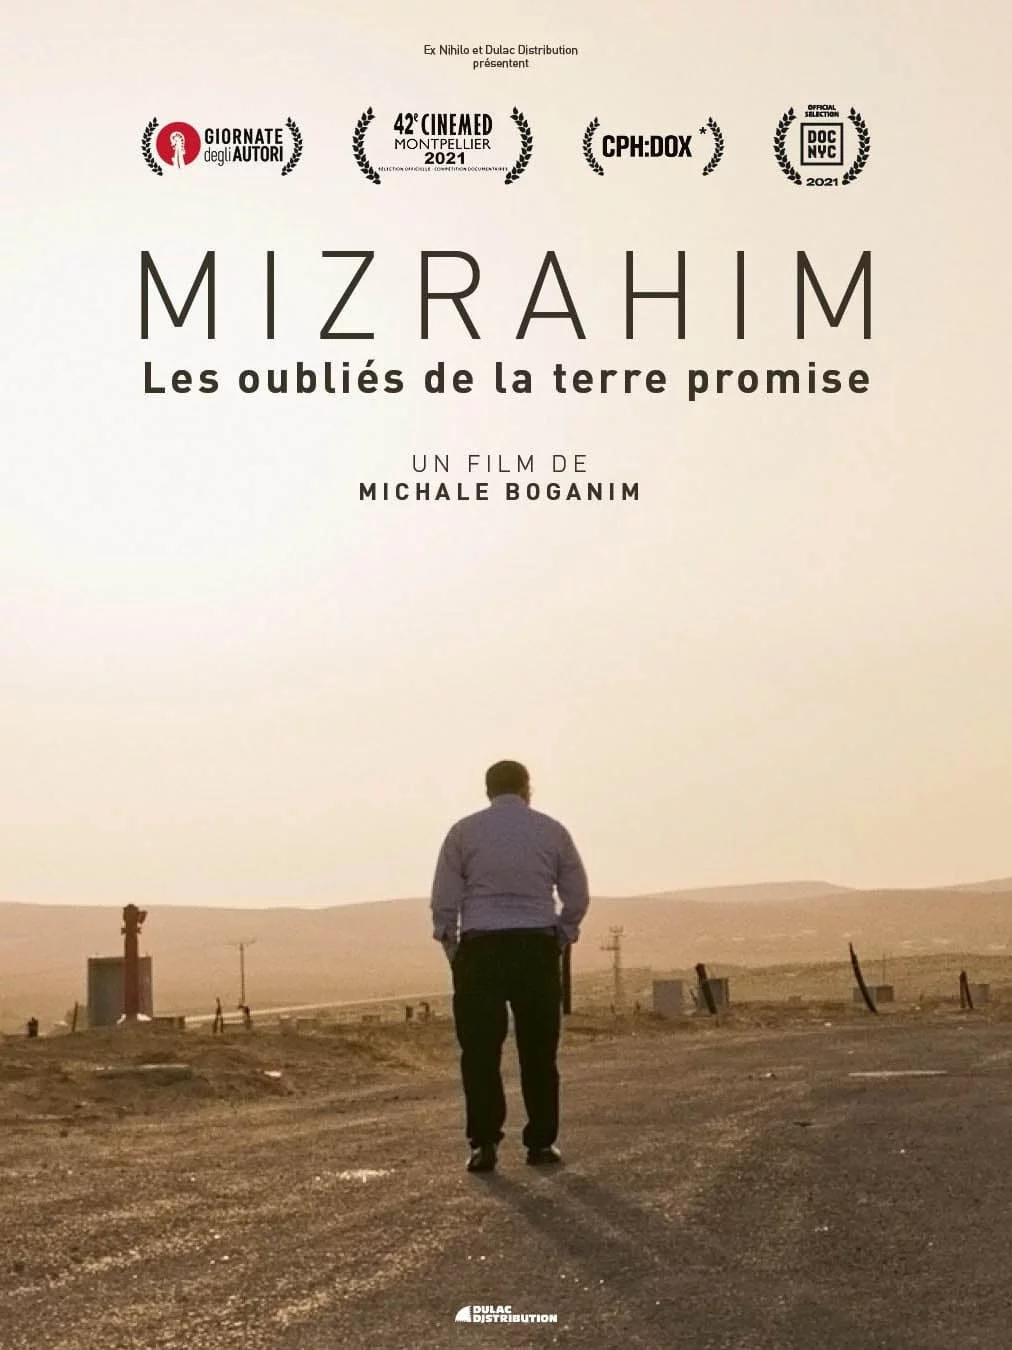 Mizrahim les oubliés de la terre promise